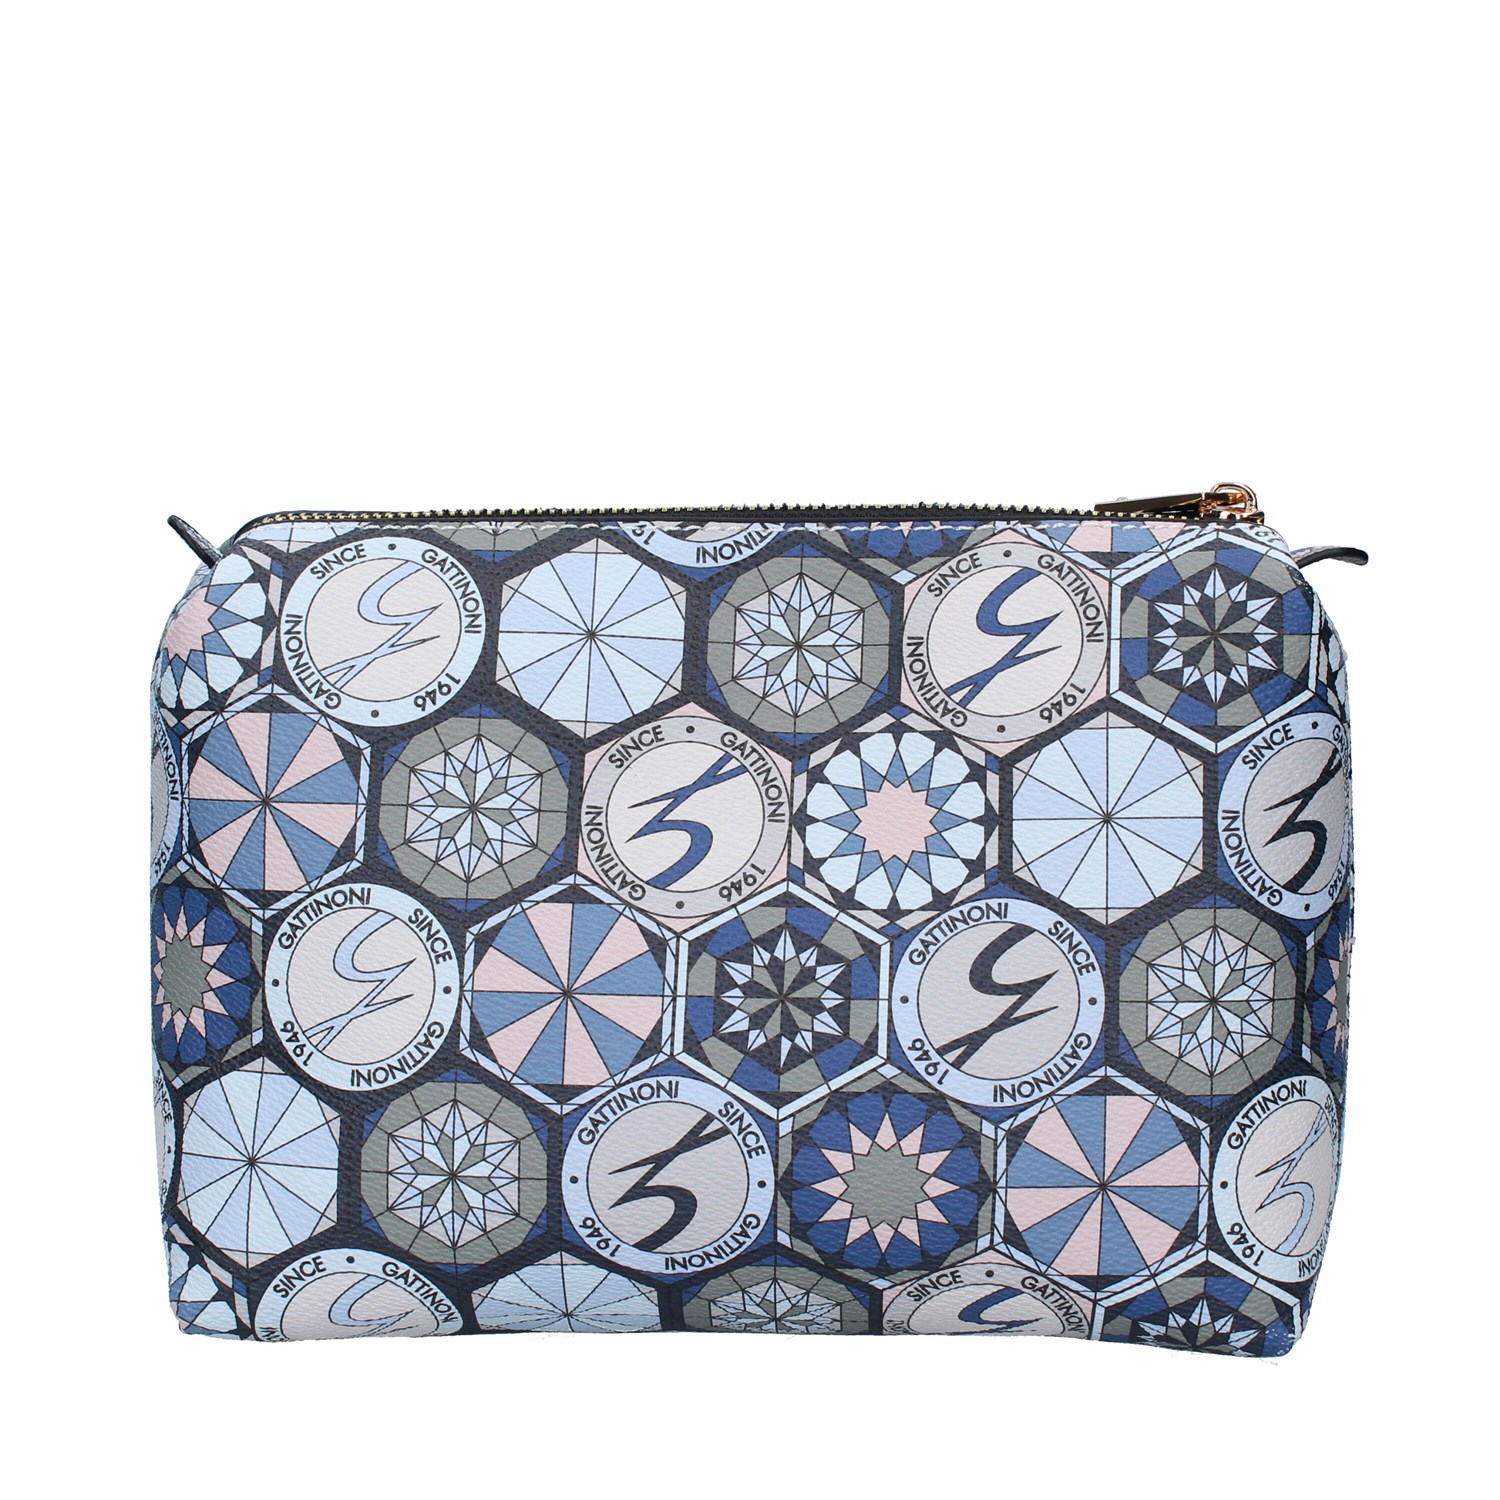 Gattinoni Roma Bags Accessories Beauty BLUE BINTD7642WW